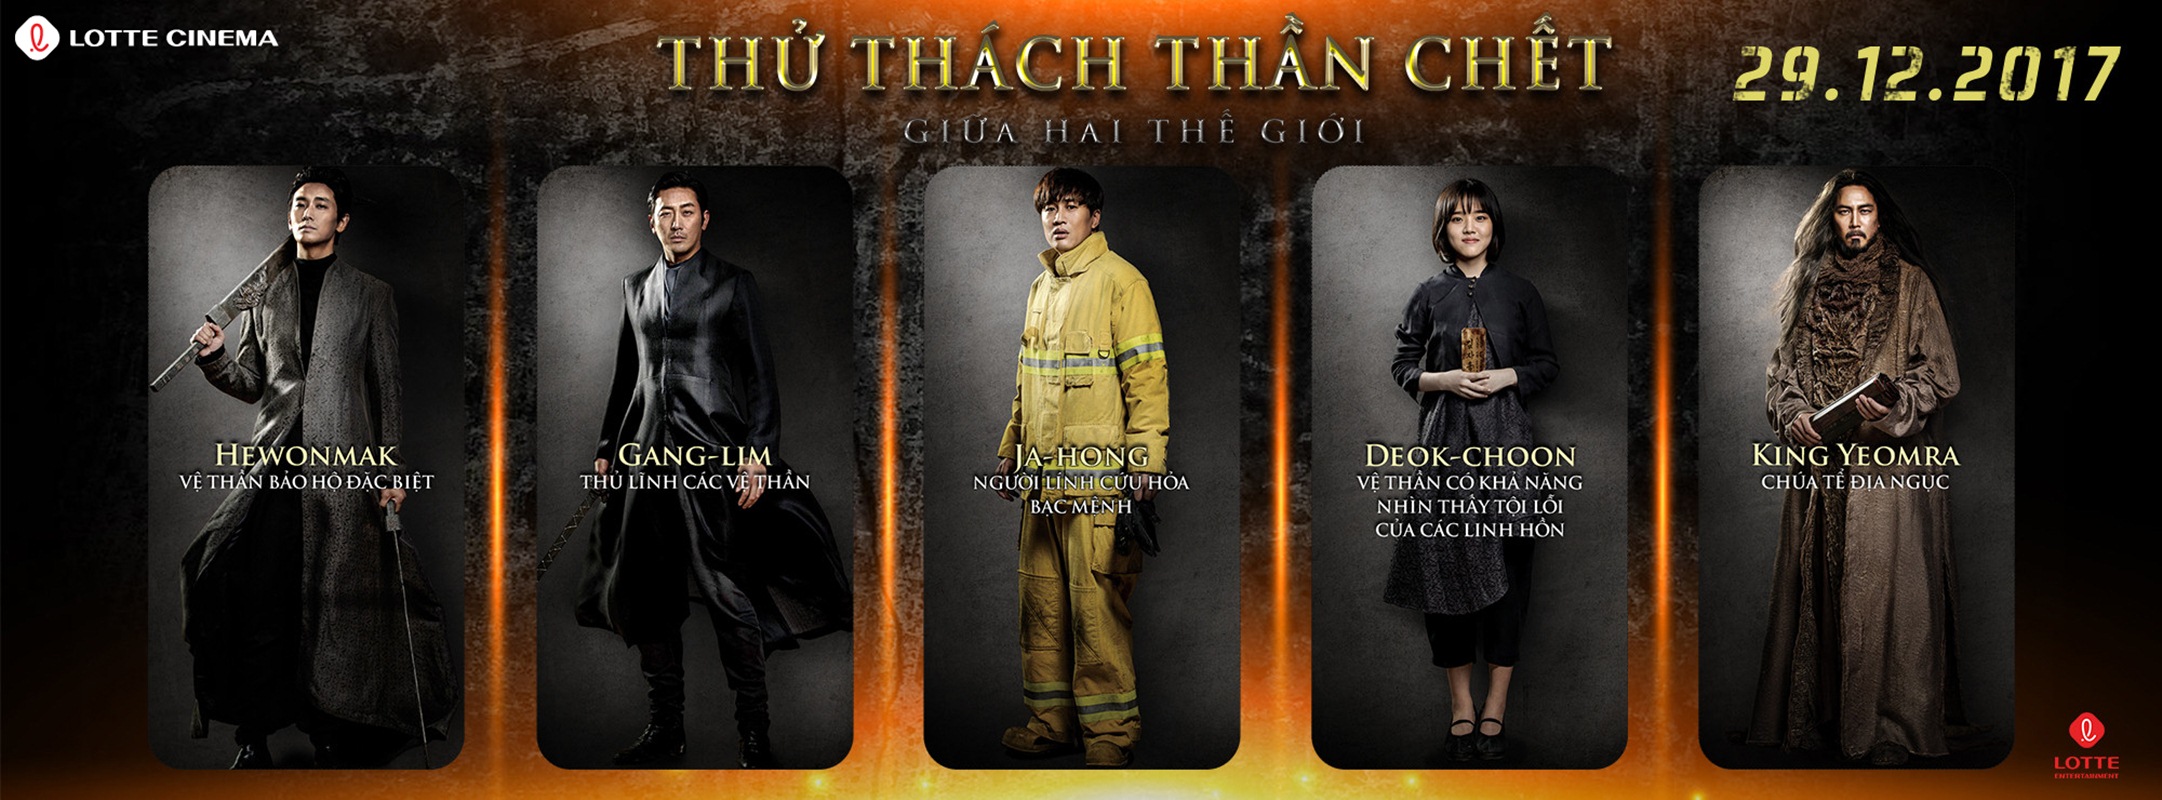 PR Lotte Cinema NMVS 15 Dec 5 Thu Thach Than Chet